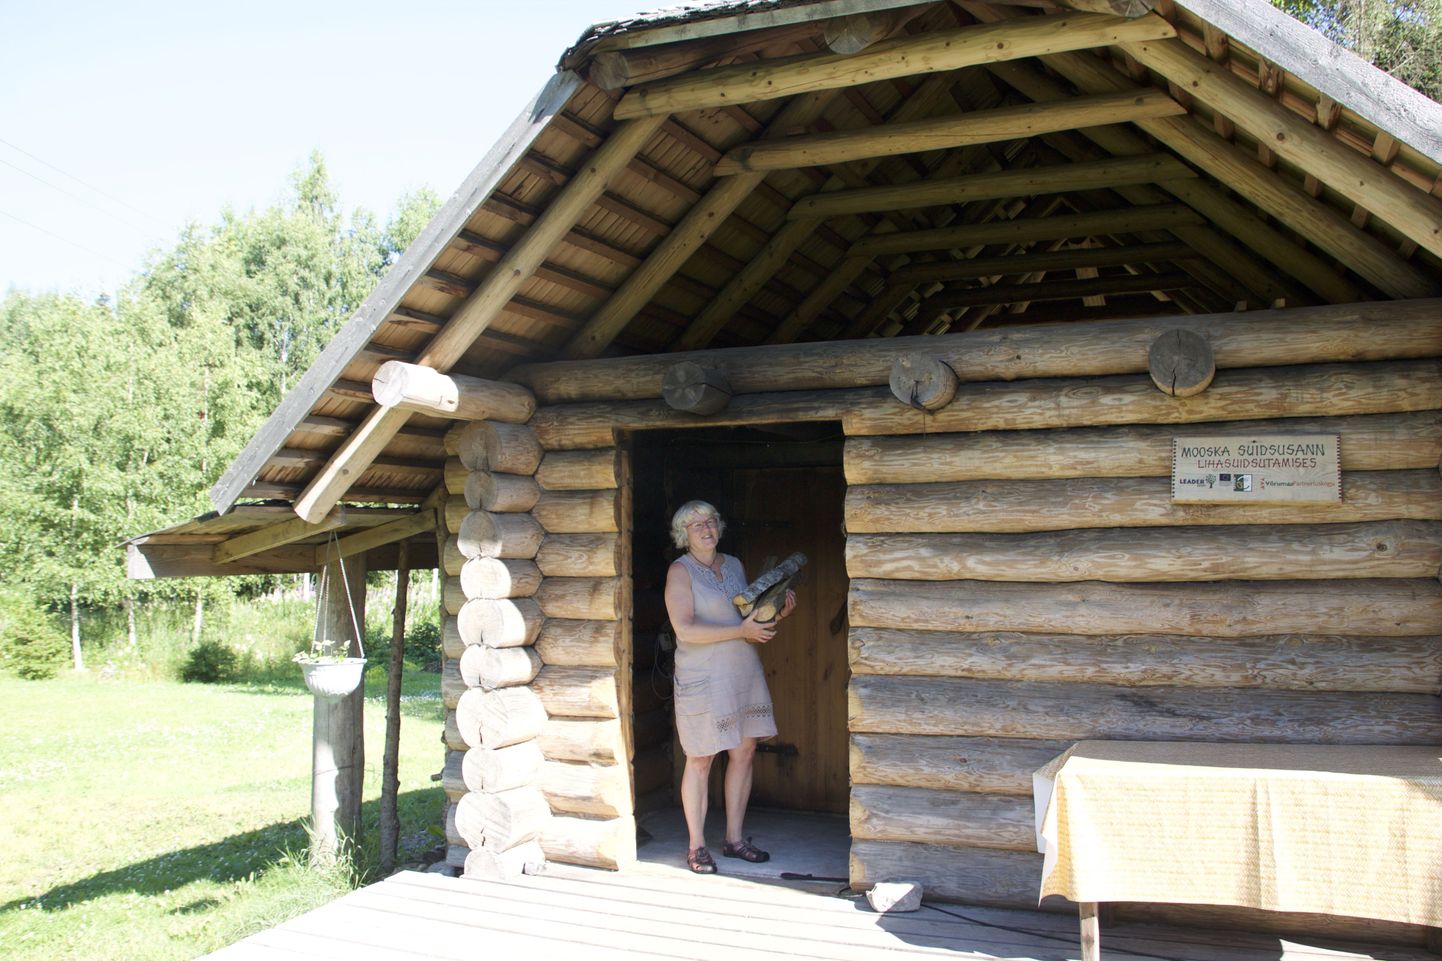 Mooska talu perenaise Eda Veeroja sõnul on talus saunapäevad neljapäeviti ja laupäeviti. Siis on võimalus kõigil huvilistel sauna tulla.